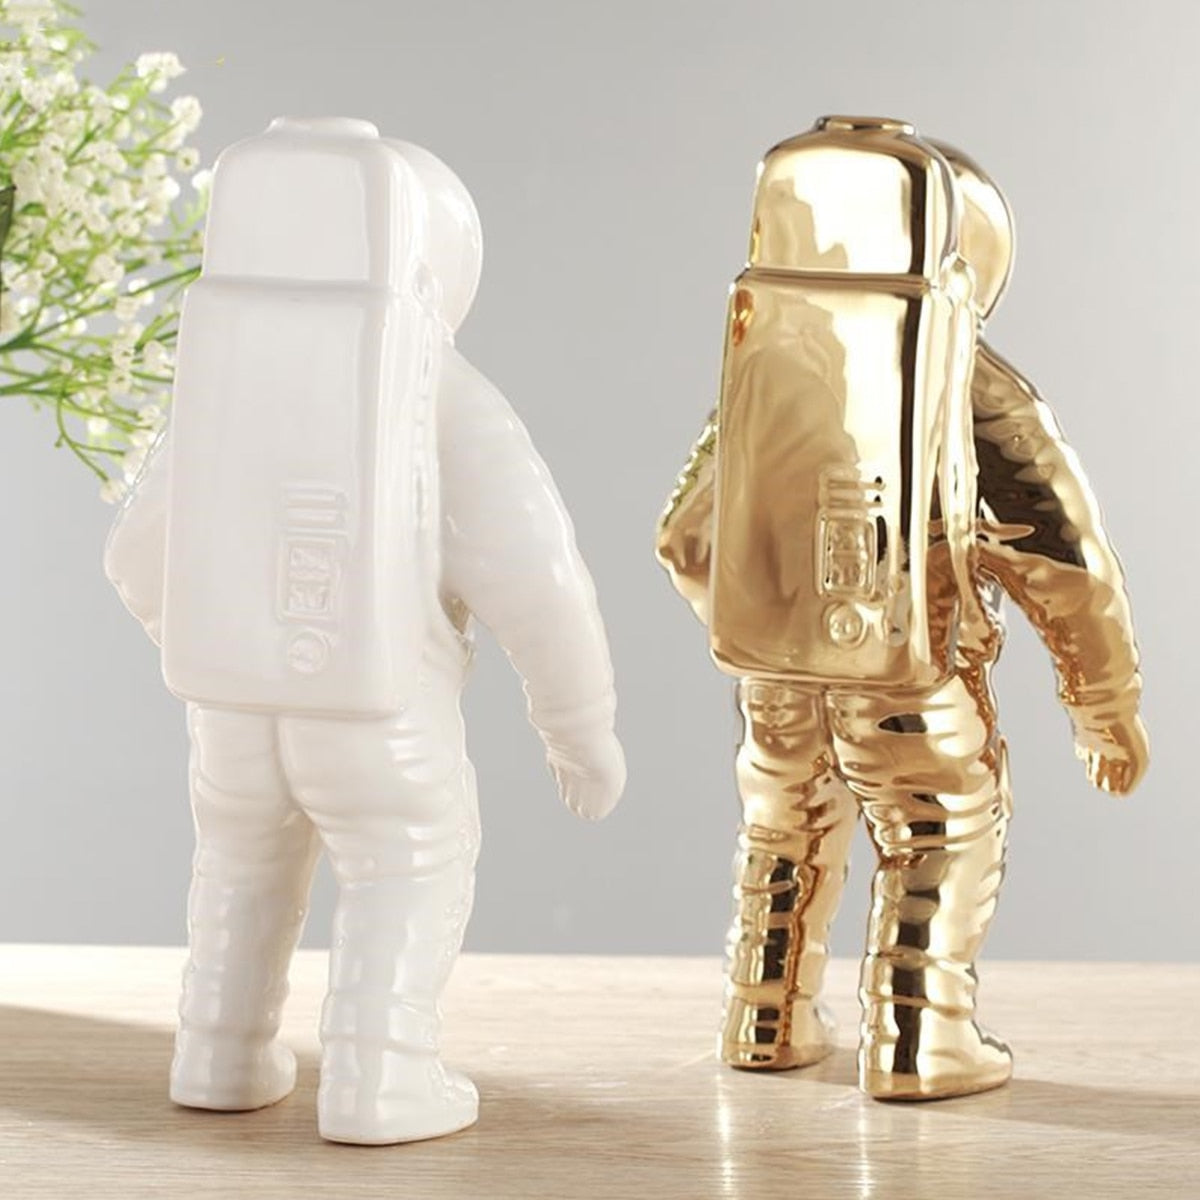 Gold Space Man rzeźba astronauta wazon ceramiczny Kreatywny nowoczesny kosmonaut model ozdobny statua ogrodowa dekretop dom